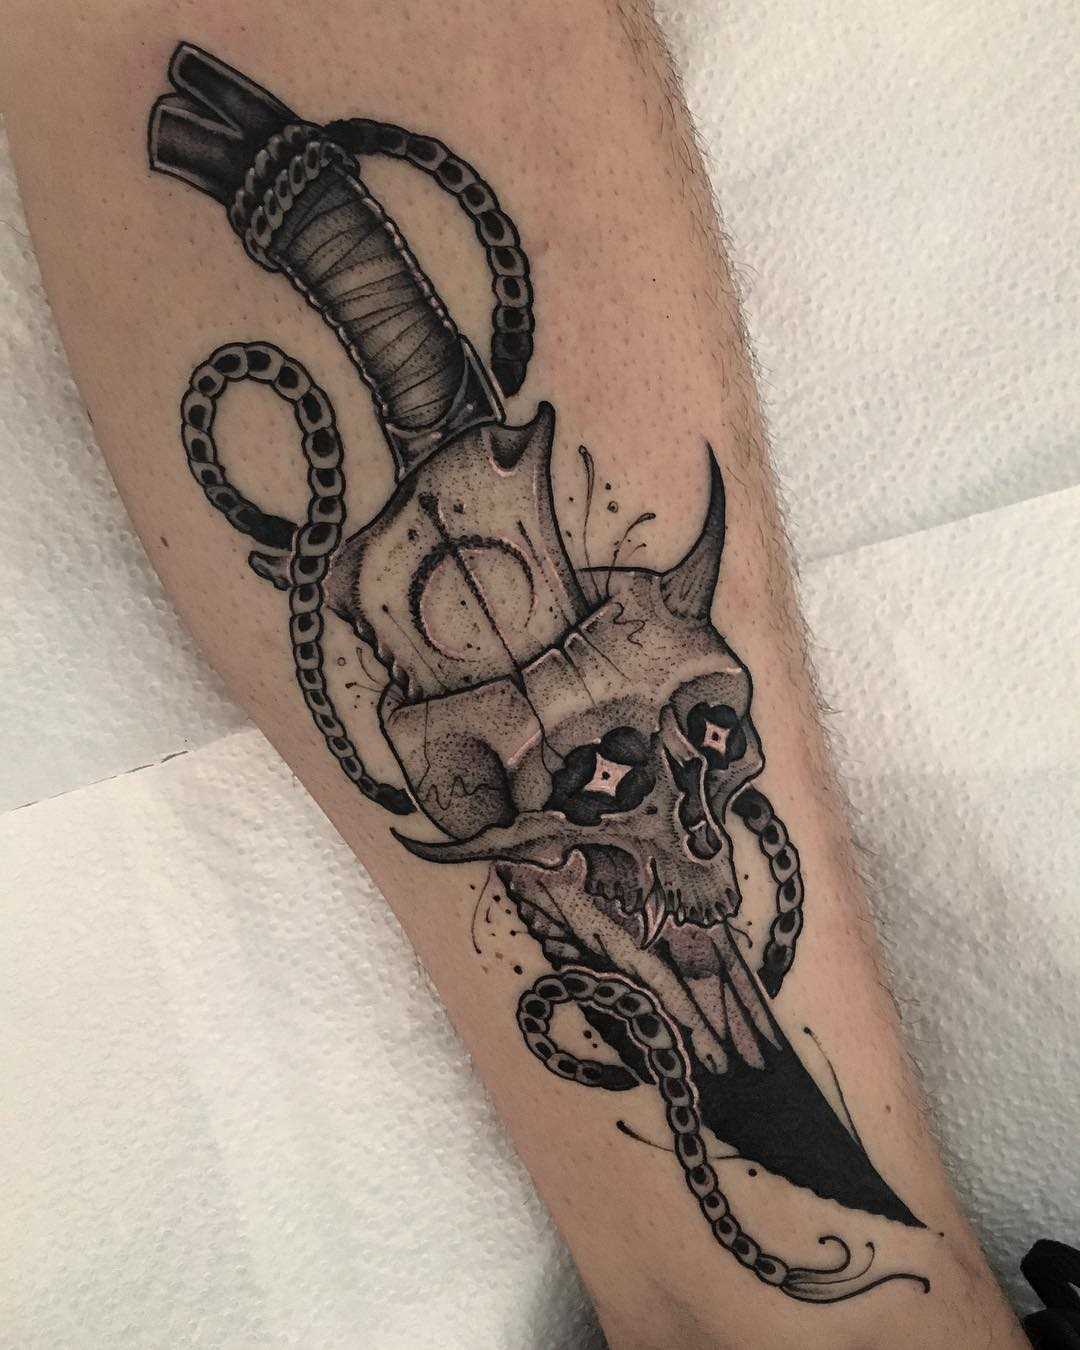 Legal a tatuagem de uma faca com uma caveira sobre a perna de um cara